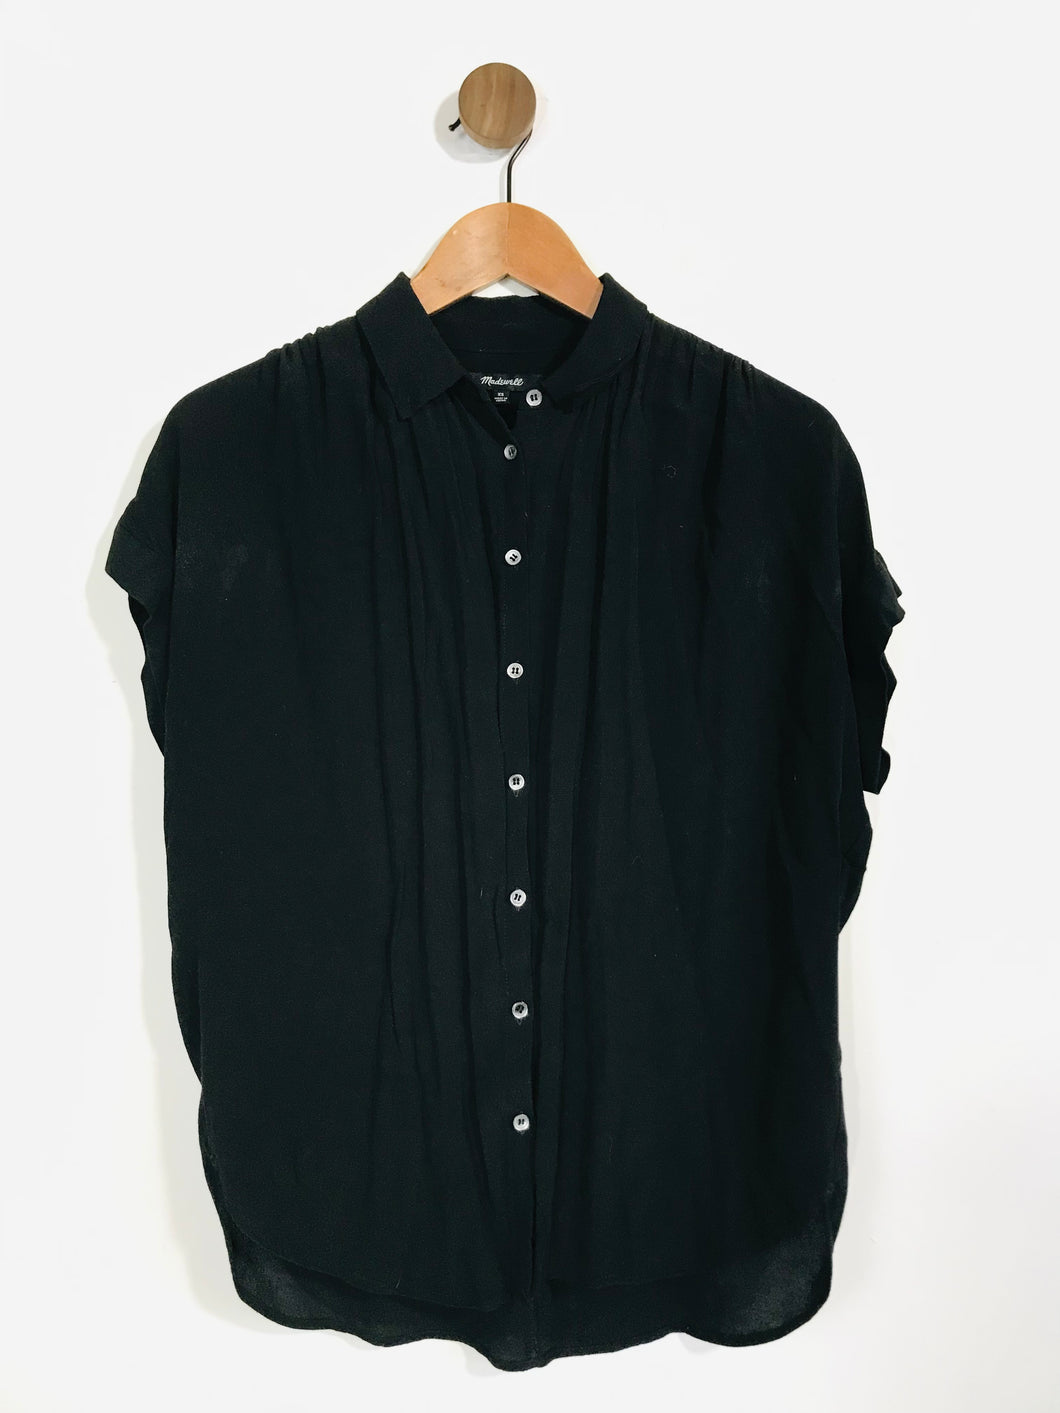 Madewell Women's Button-Up Shirt | XS UK6-8 | Black